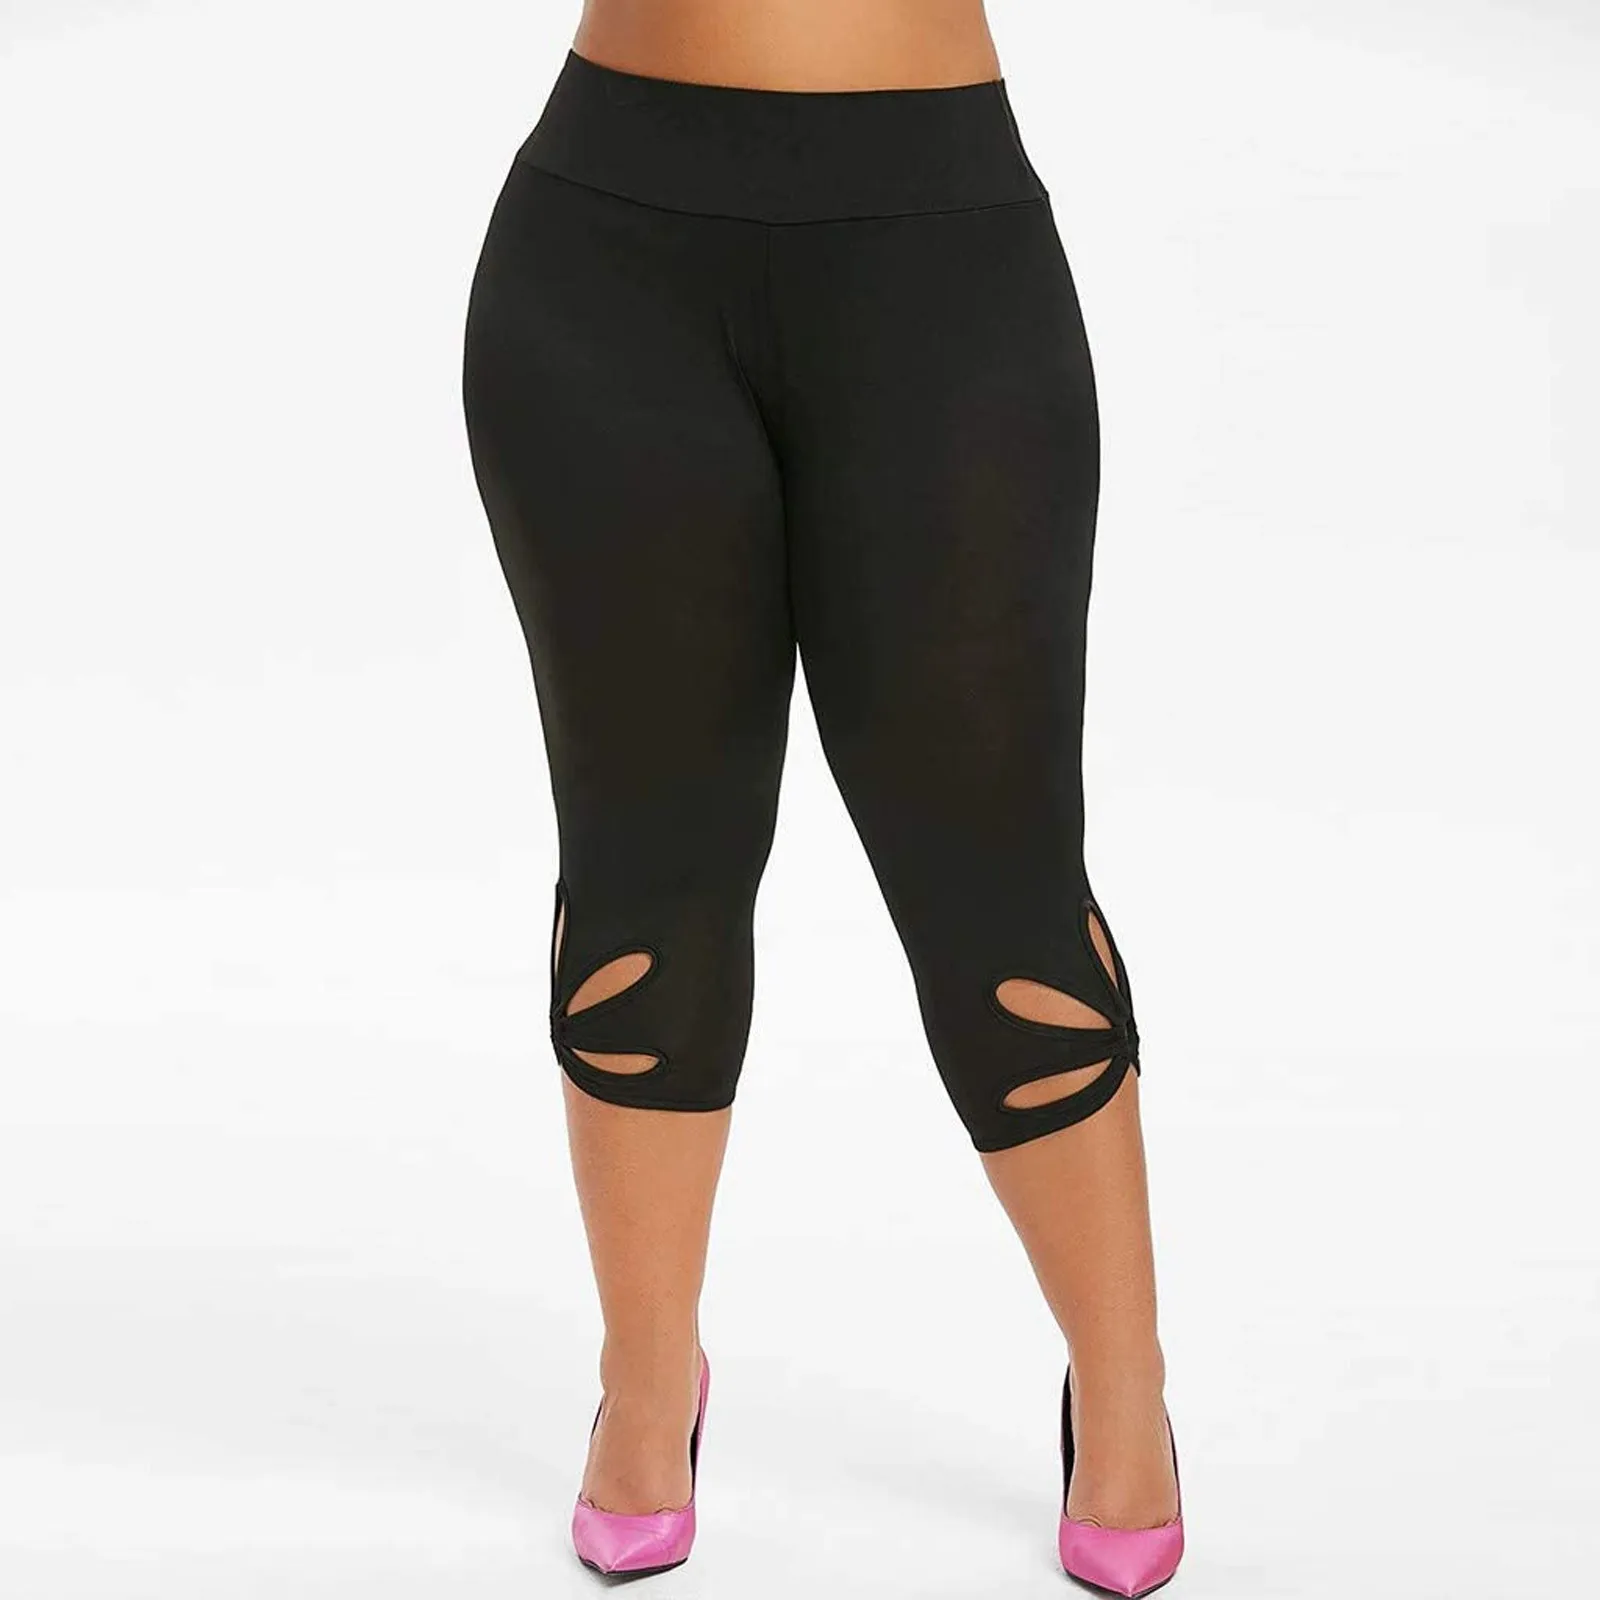 

Женские леггинсы для тренировок, эластичные облегающие леггинсы, супер эластичные штаны для йоги, укороченные шорты с высокой талией, брюки